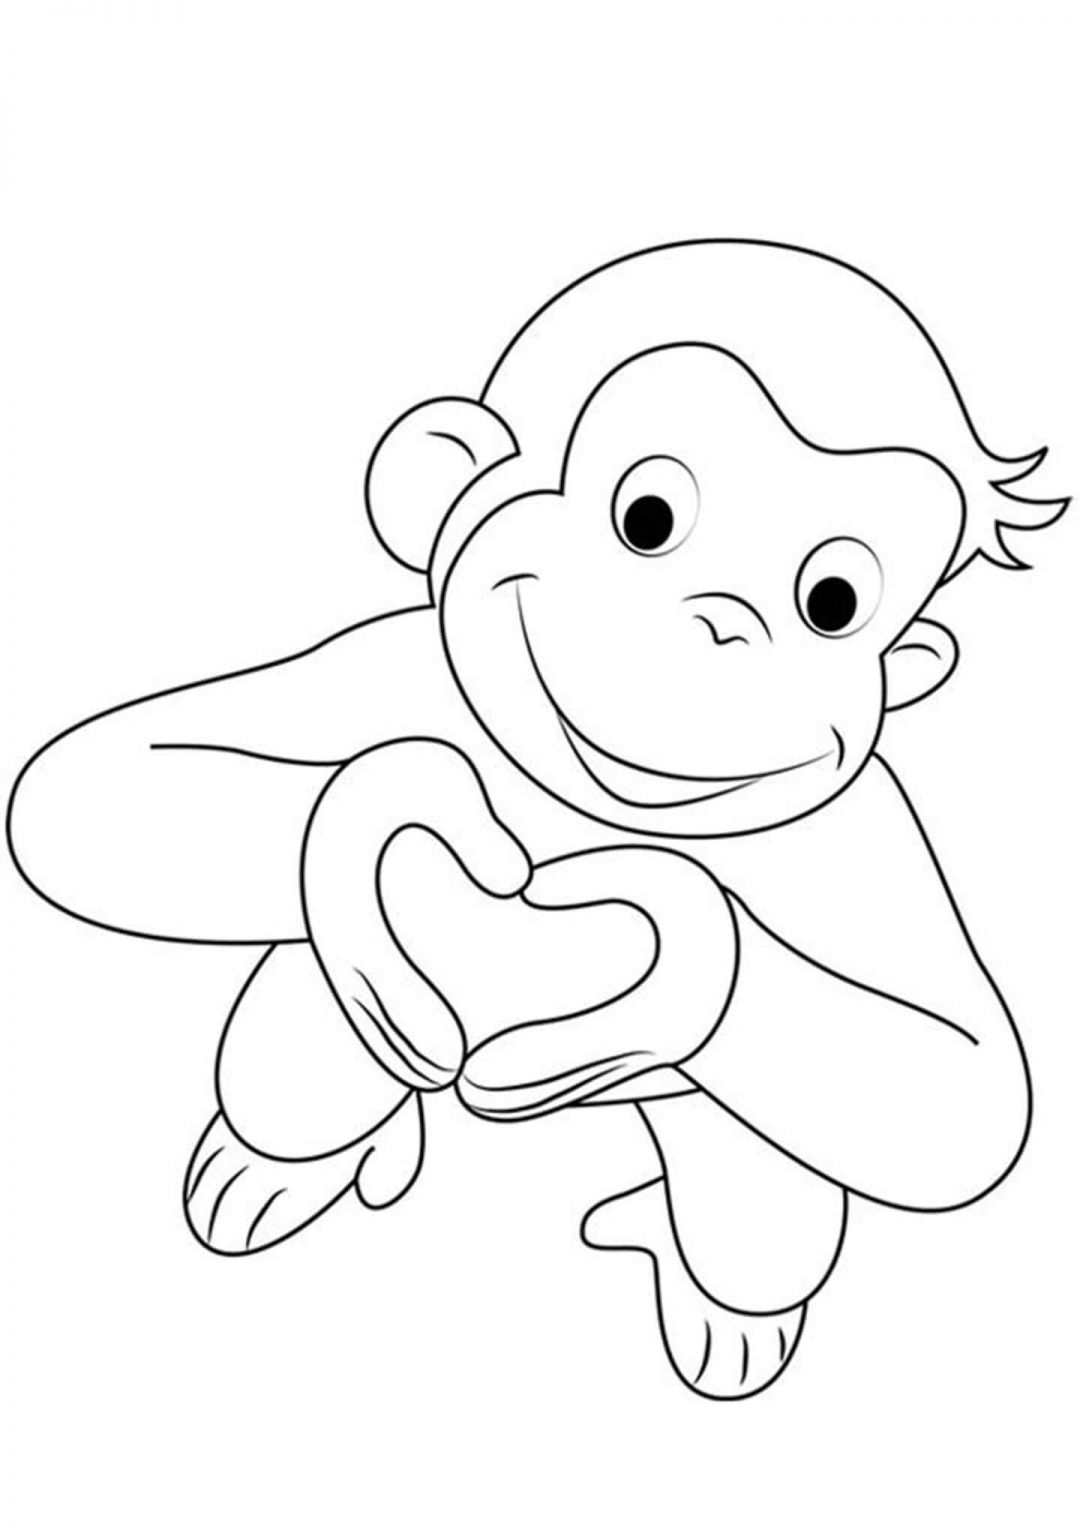 Рисунок голова обезьяны - 62 фото